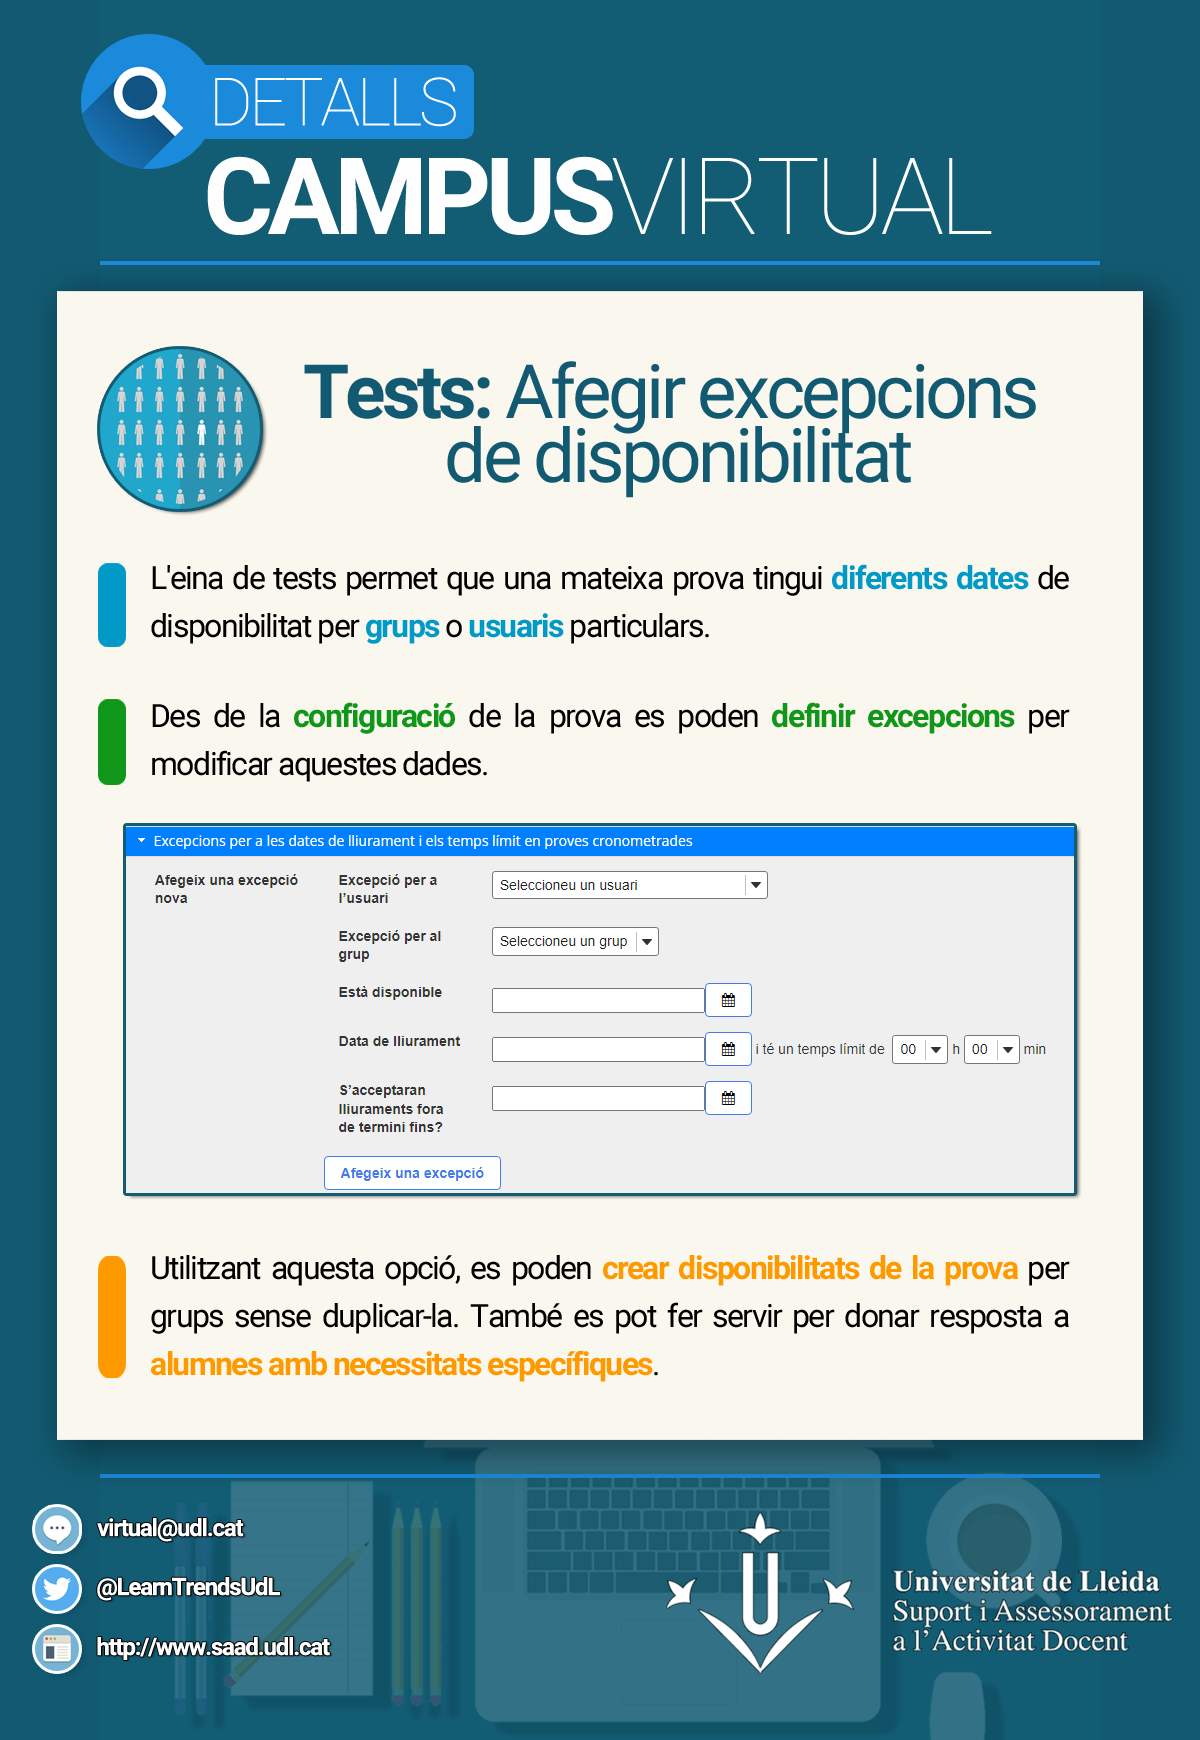 Tests: Afegir excepcions de disponibilitat